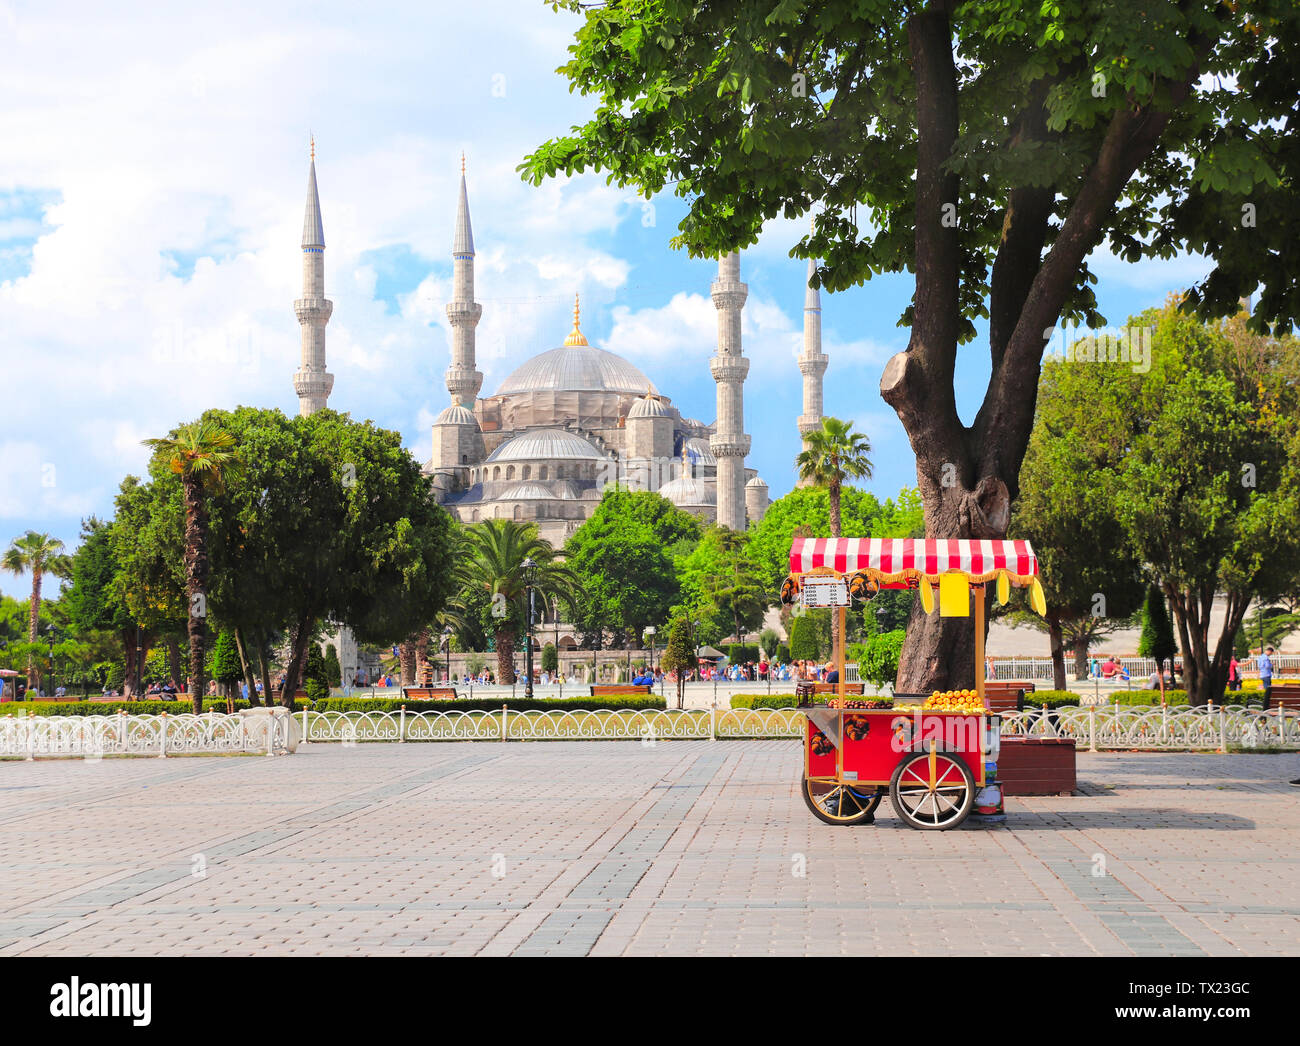 La mosquée bleue (Sultan Ahmet mosquée) et de châtaignier traditionnel turc et de maïs panier, la Place Sultanahmet, Istanbul, Turquie Banque D'Images